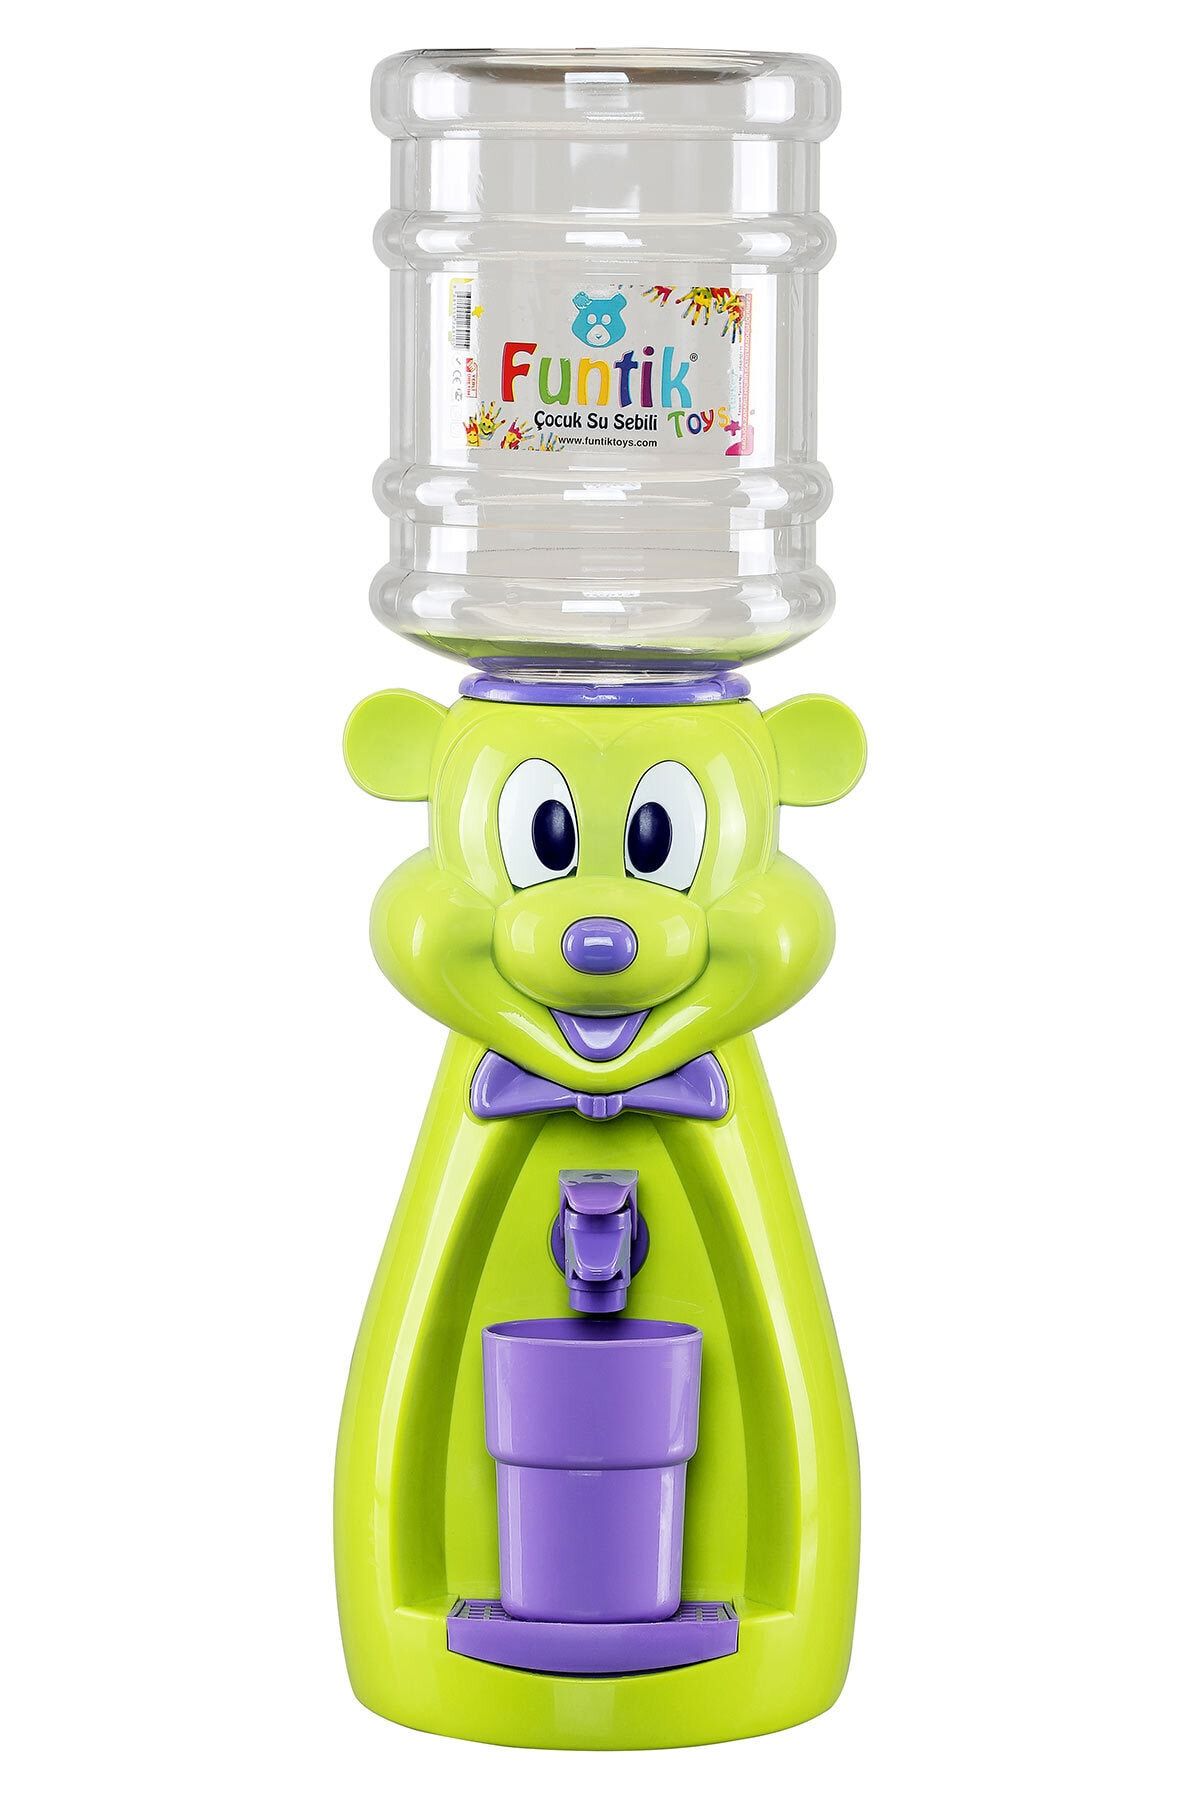 Funtik Toys Funtik Ayı Çocuk Su Sebili Yeşil Üzeri Mor